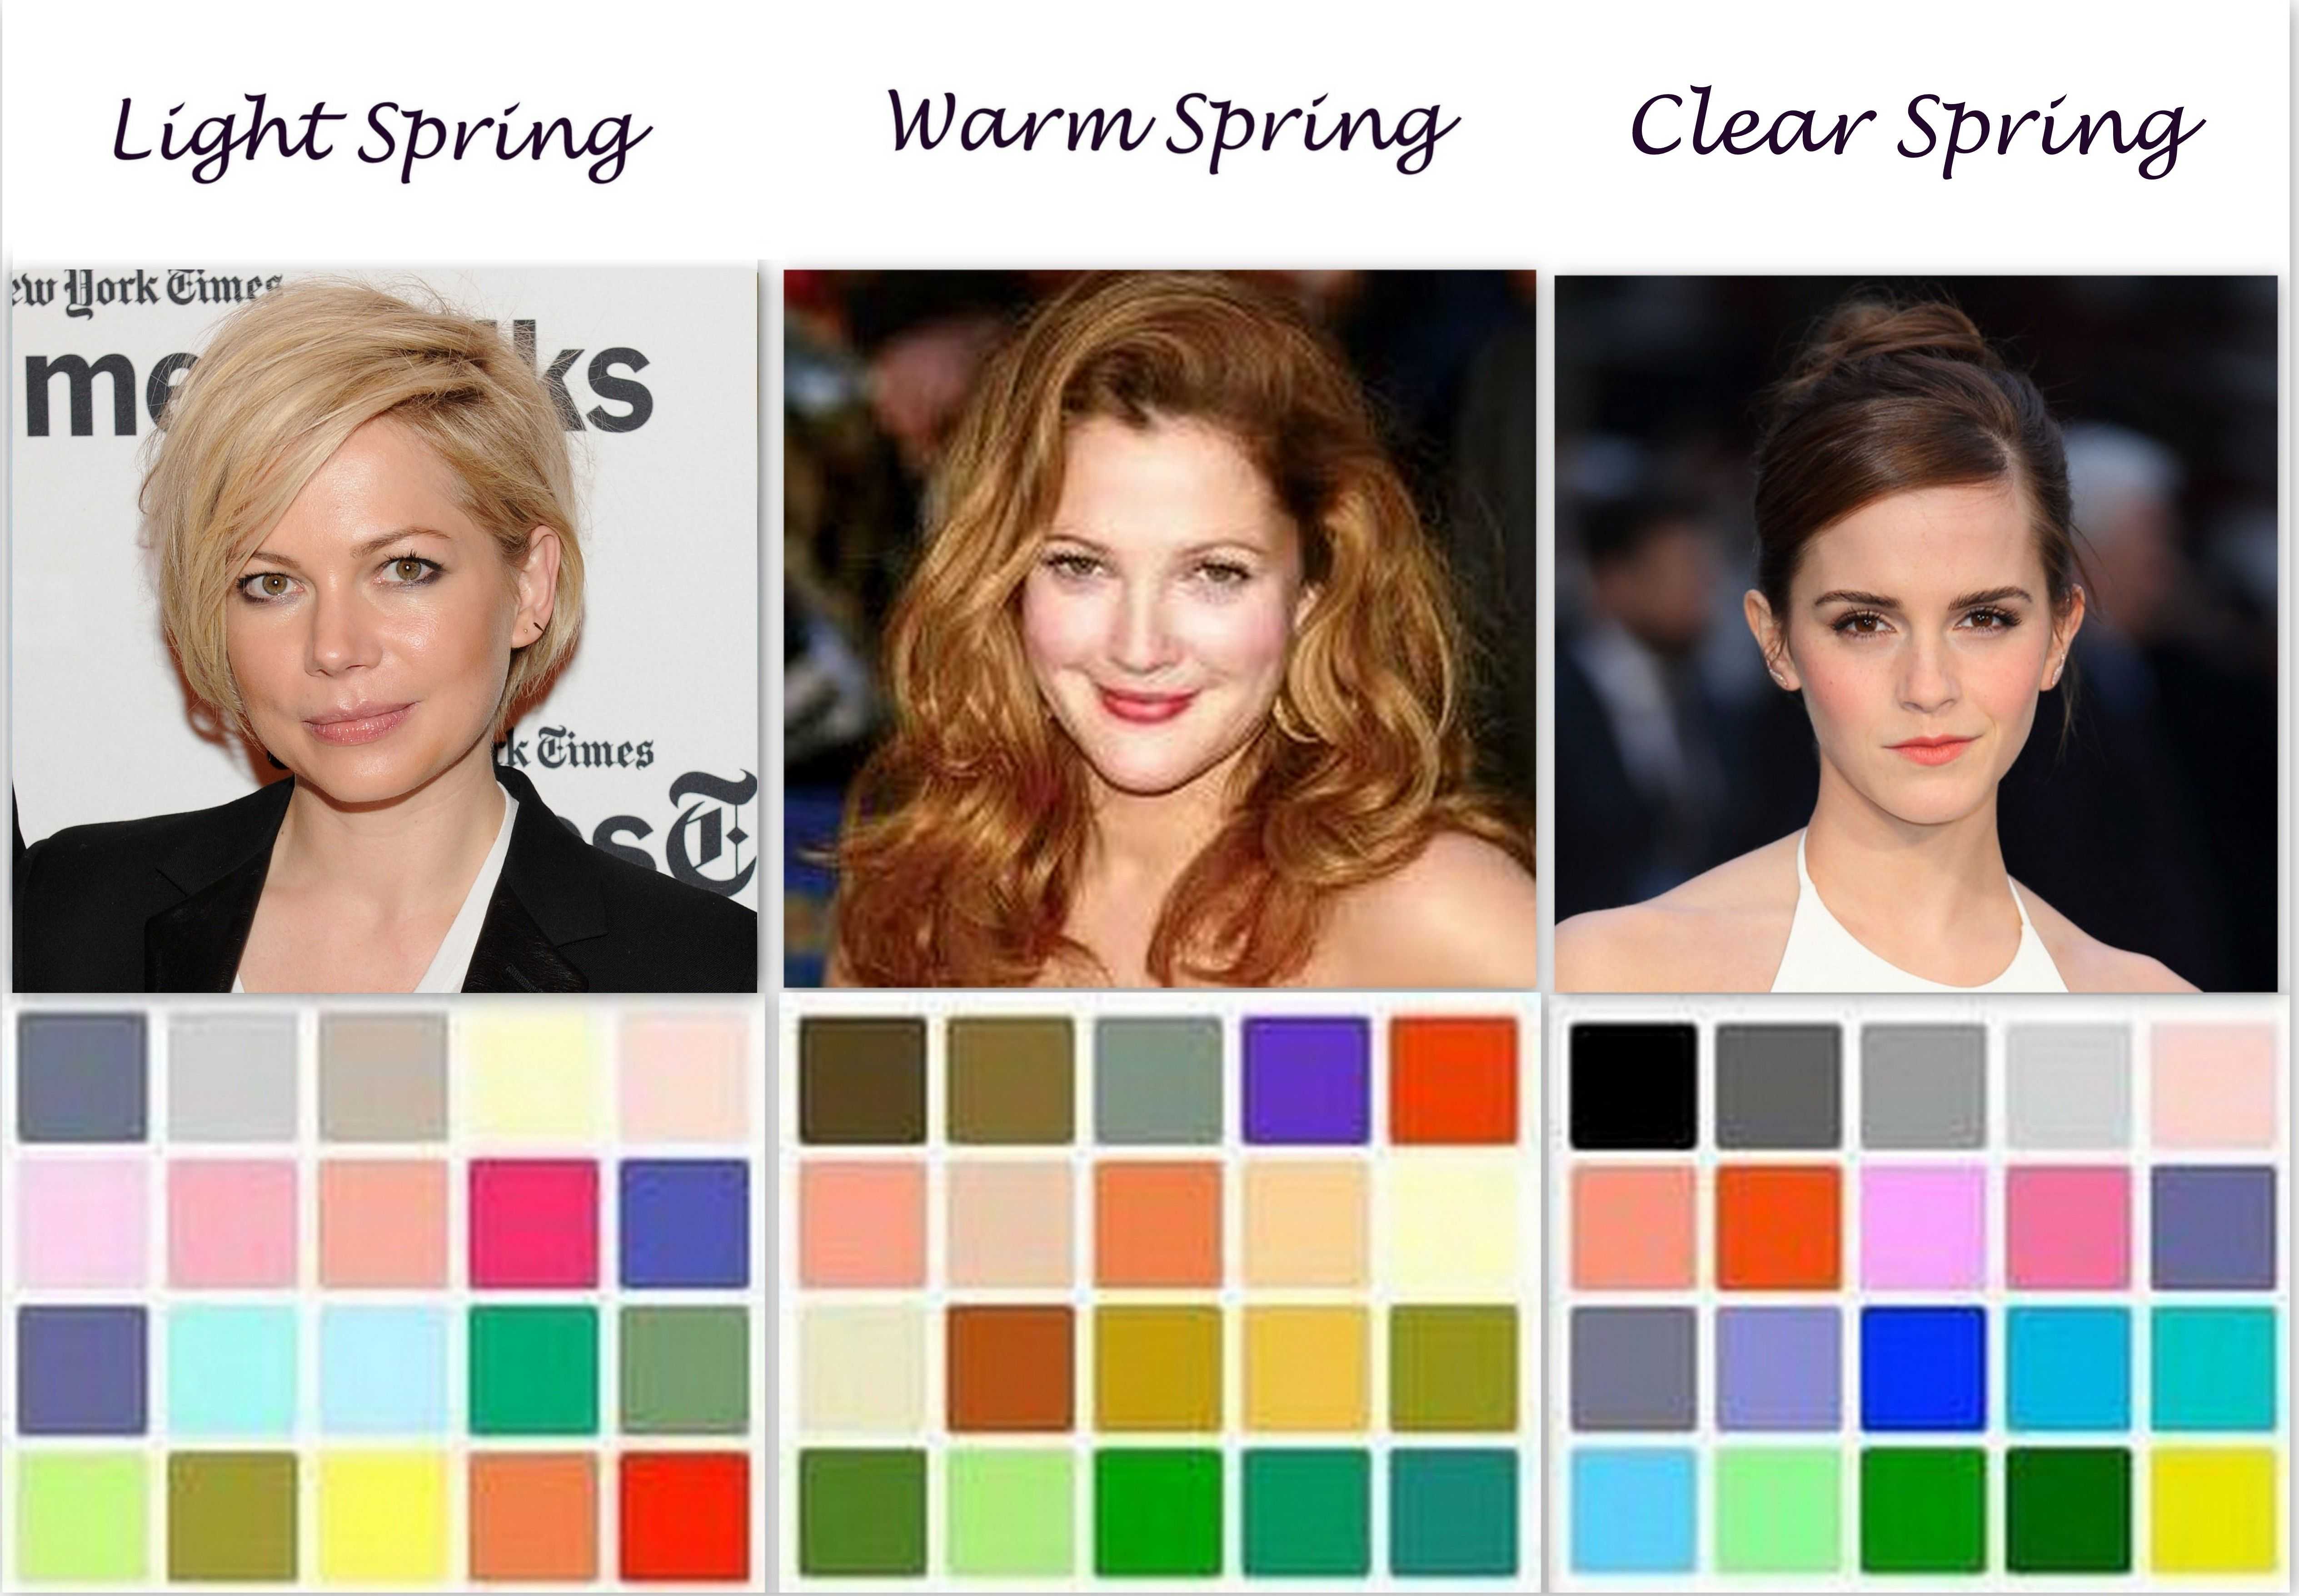 Цветотип весна и ее подтипы: тёплая, светлая, яркая и другие